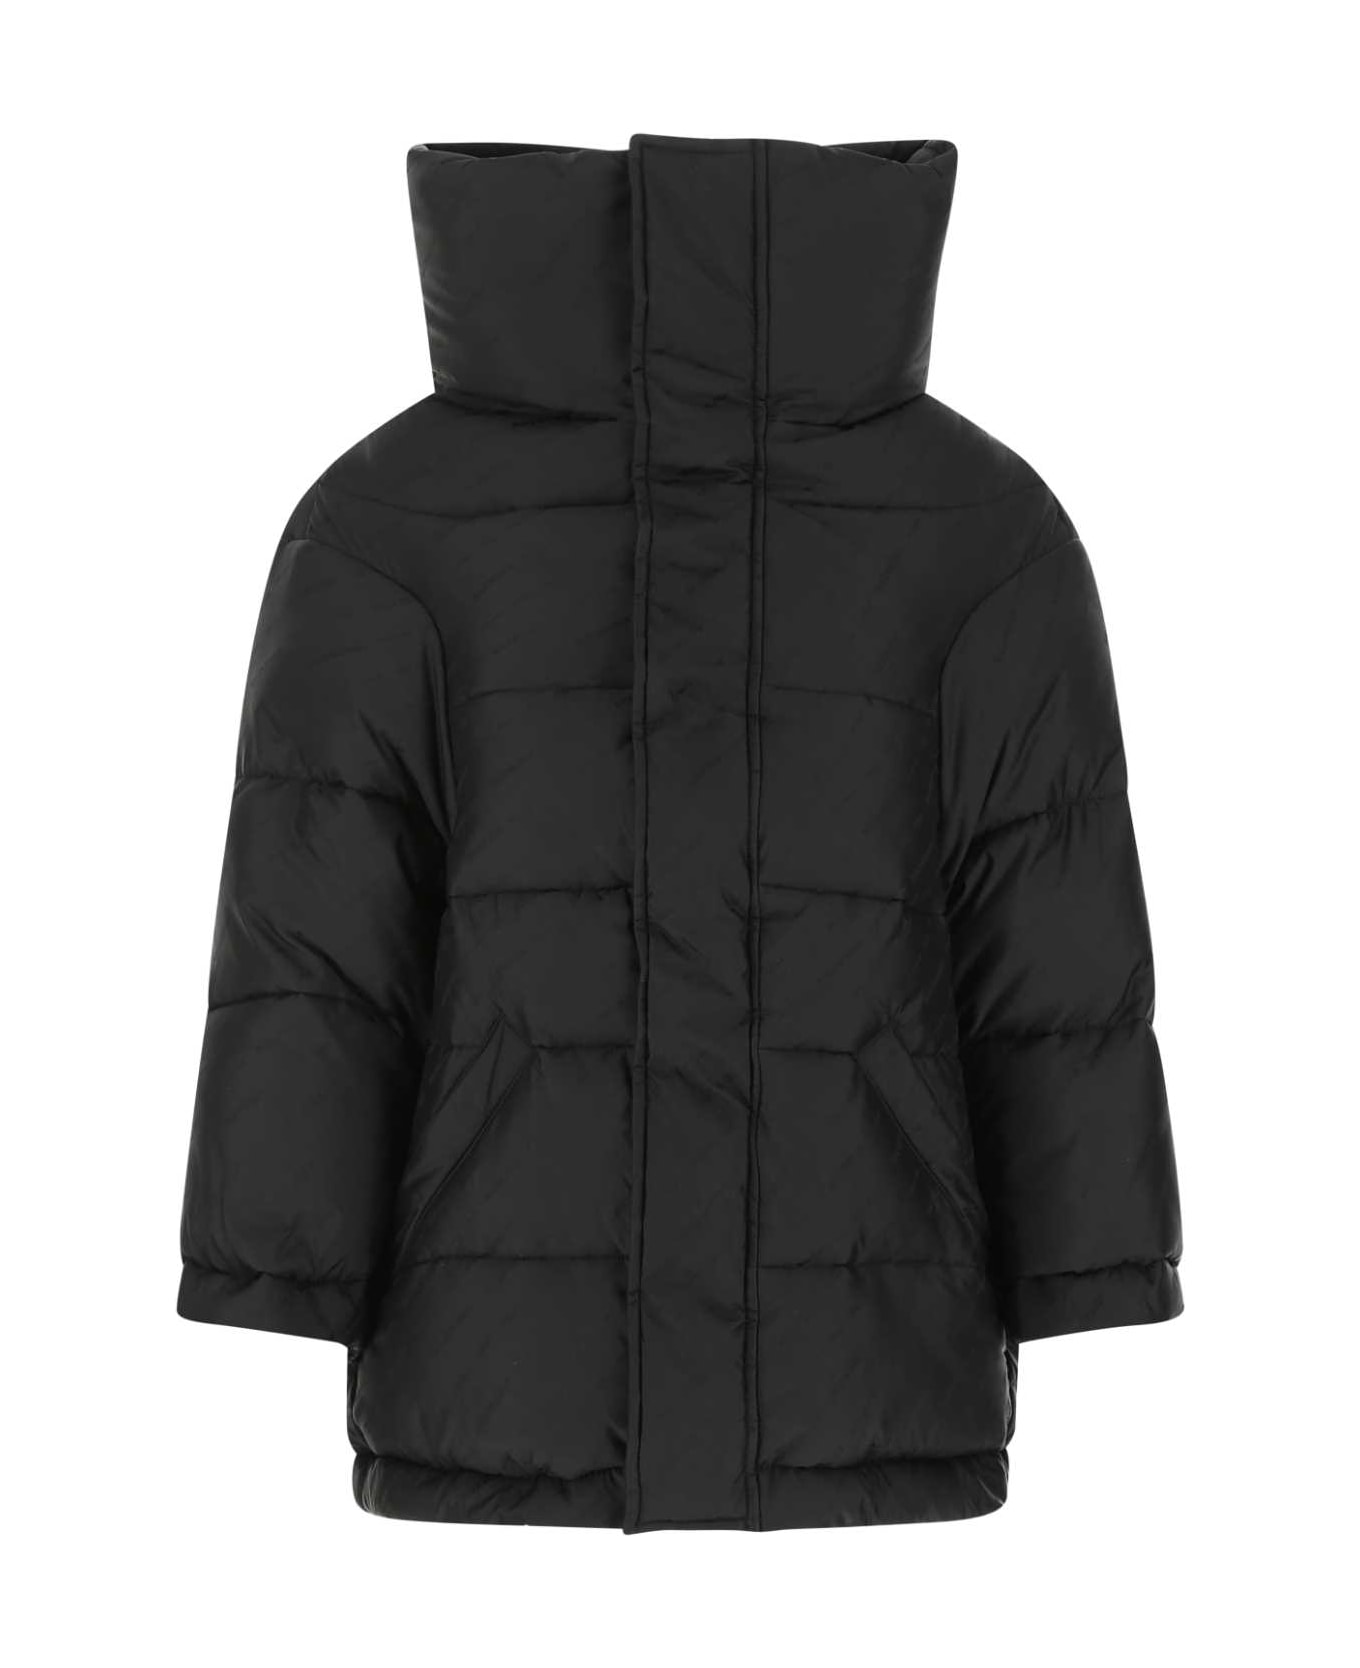 Balenciaga Black Nylon Padded Jacket - 1000